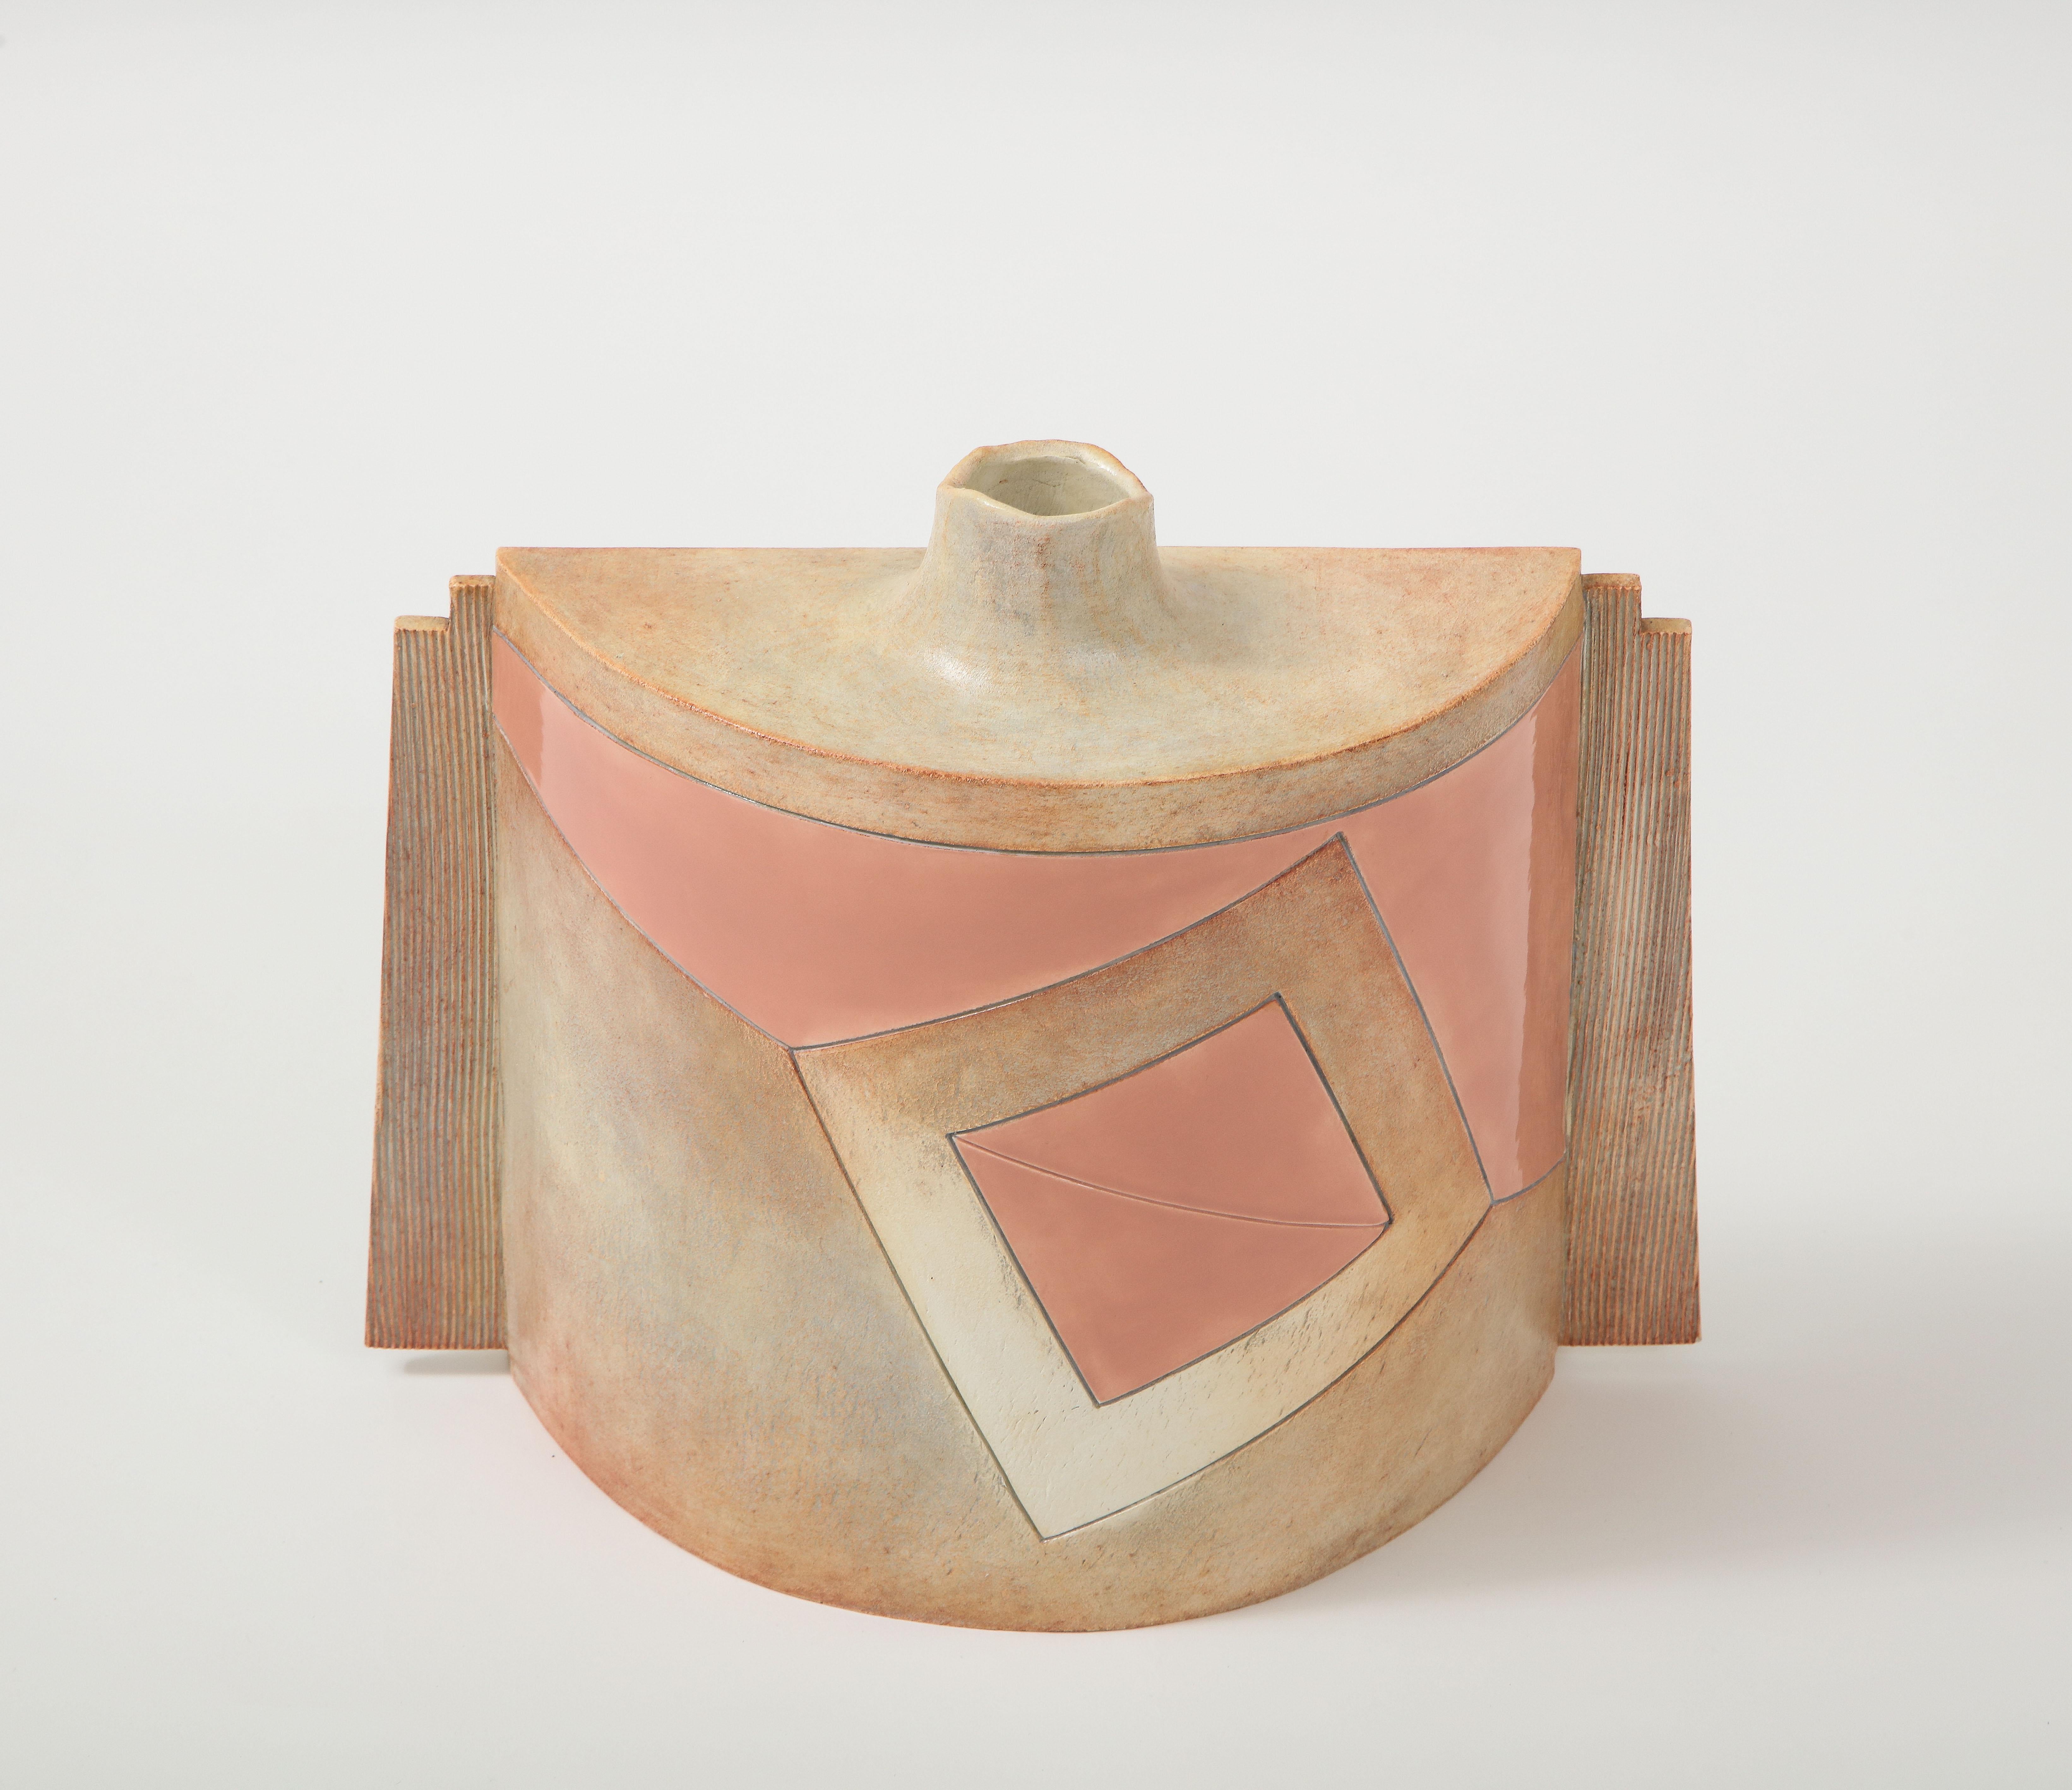 dekorative signierte Keramikvase im Memphis-Stil aus den 1980er Jahren, in alters- und gebrauchsbedingtem Originalzustand mit leichter Abnutzung und Patina.